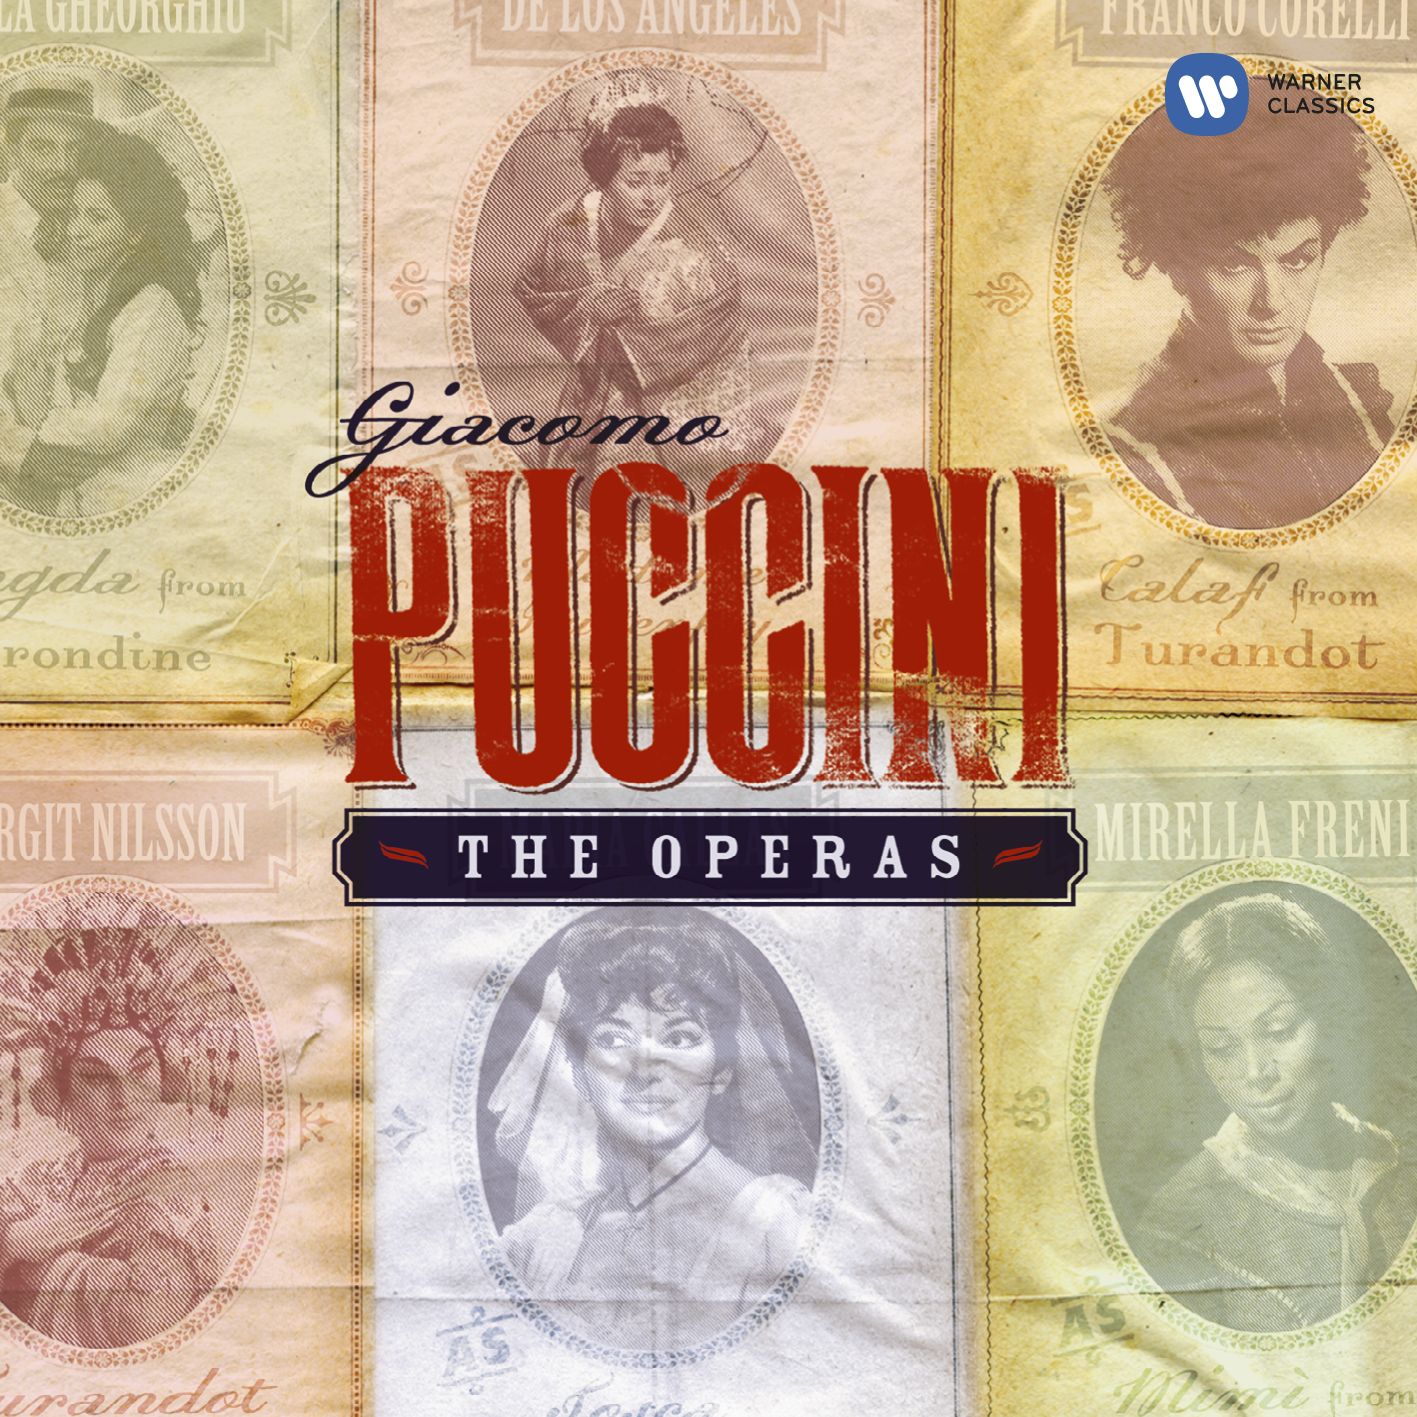 Turandot (libretto by Giuseppe Adami & Renato Simoni, after Carlo Gozzi) (1988 Digital Remaster), ACT 3, Scene 1: Nessun Dorma (